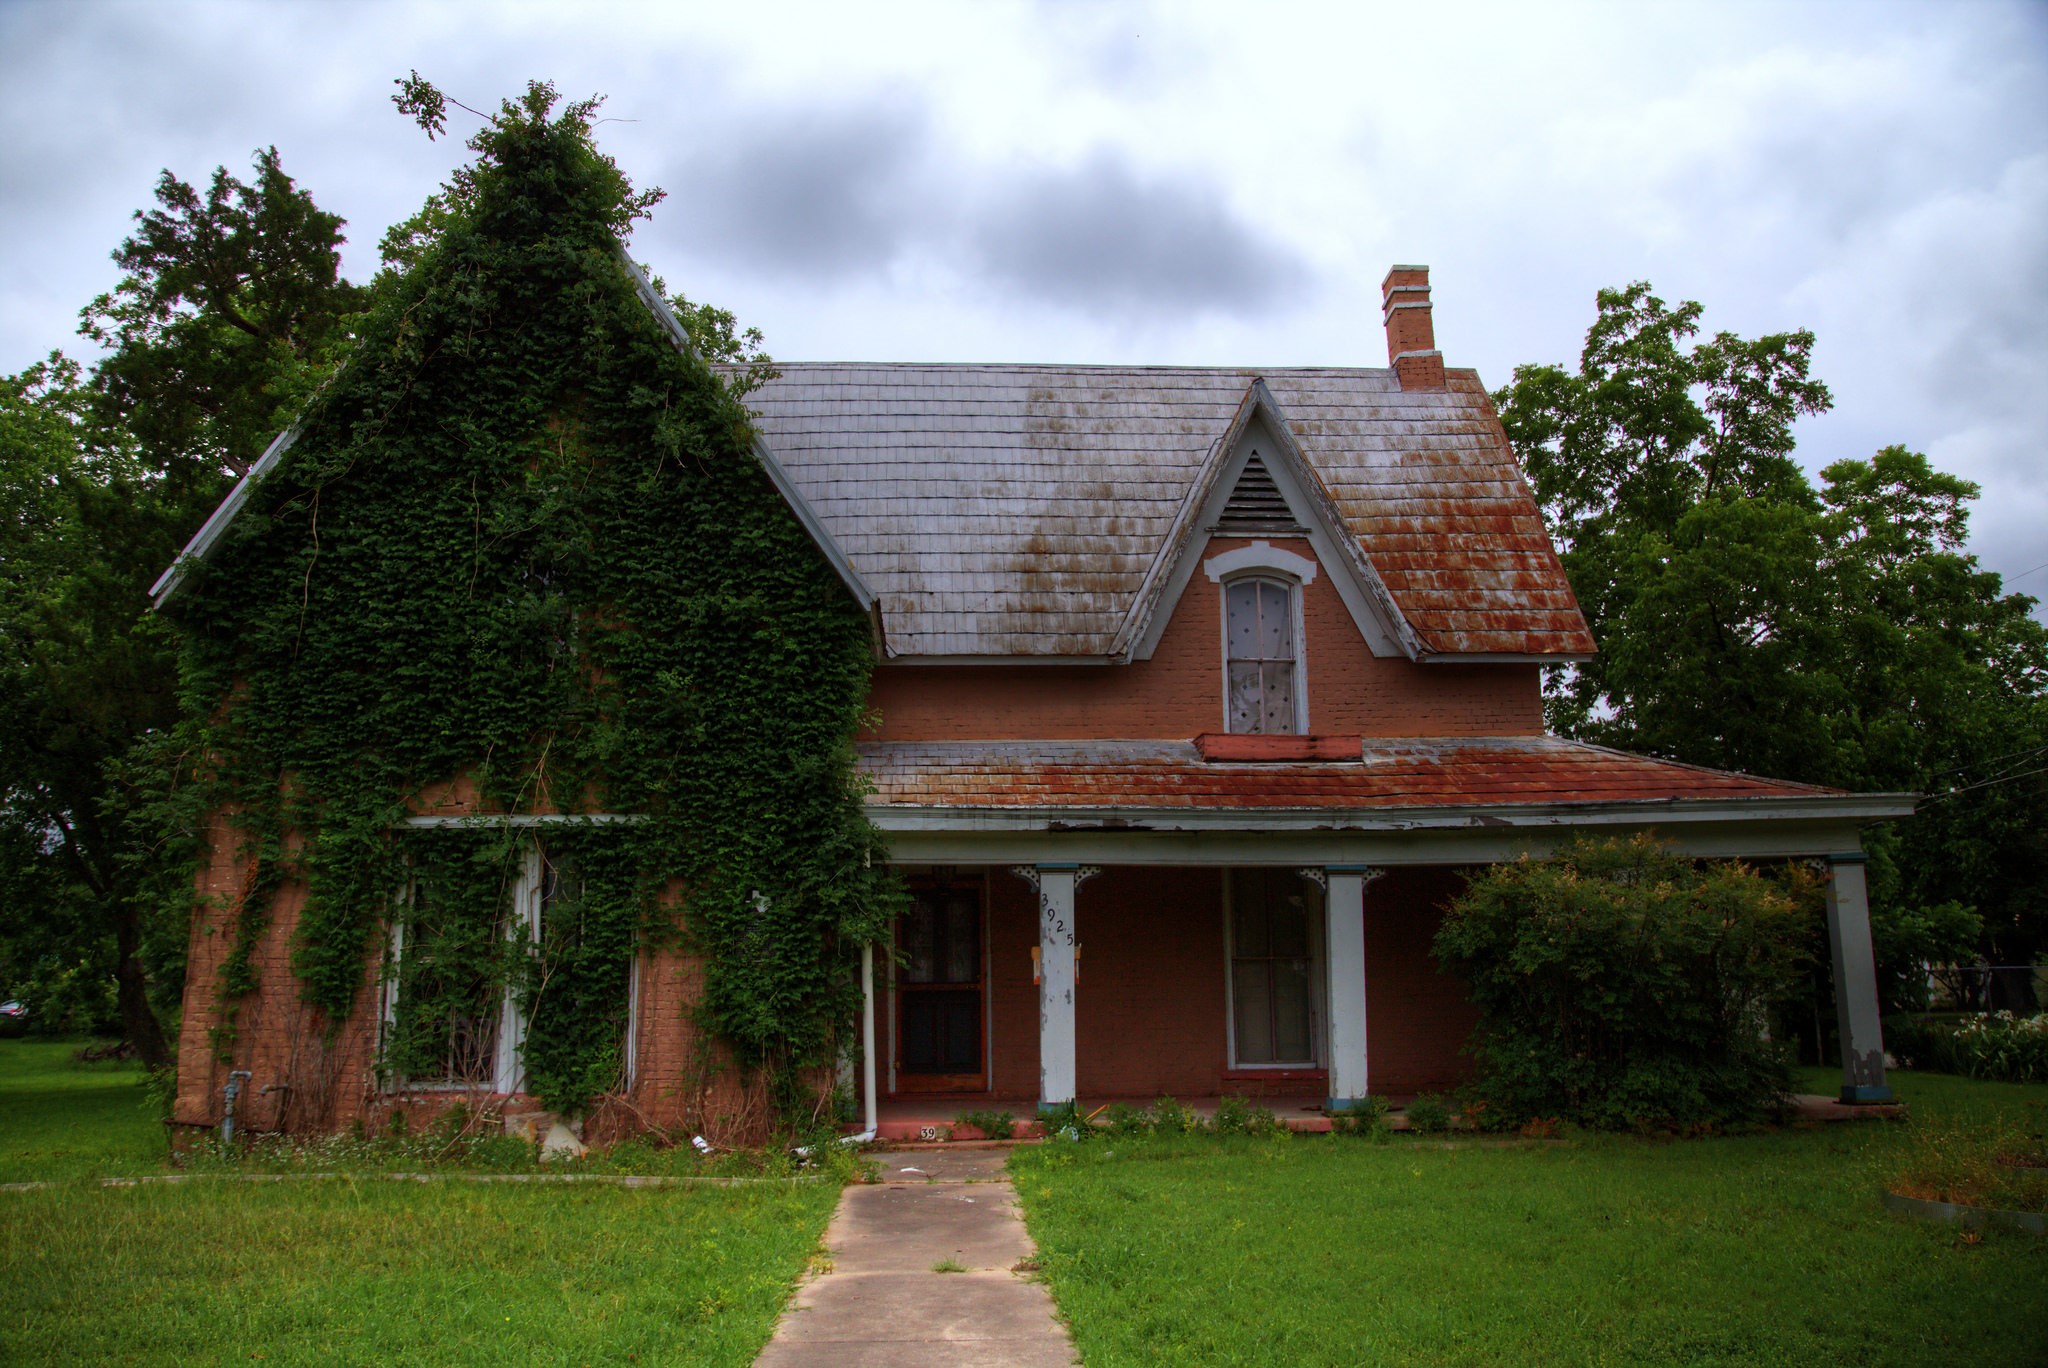 Abandoned House in Your Houston Neighborhood | We Buy Ugly Houses®